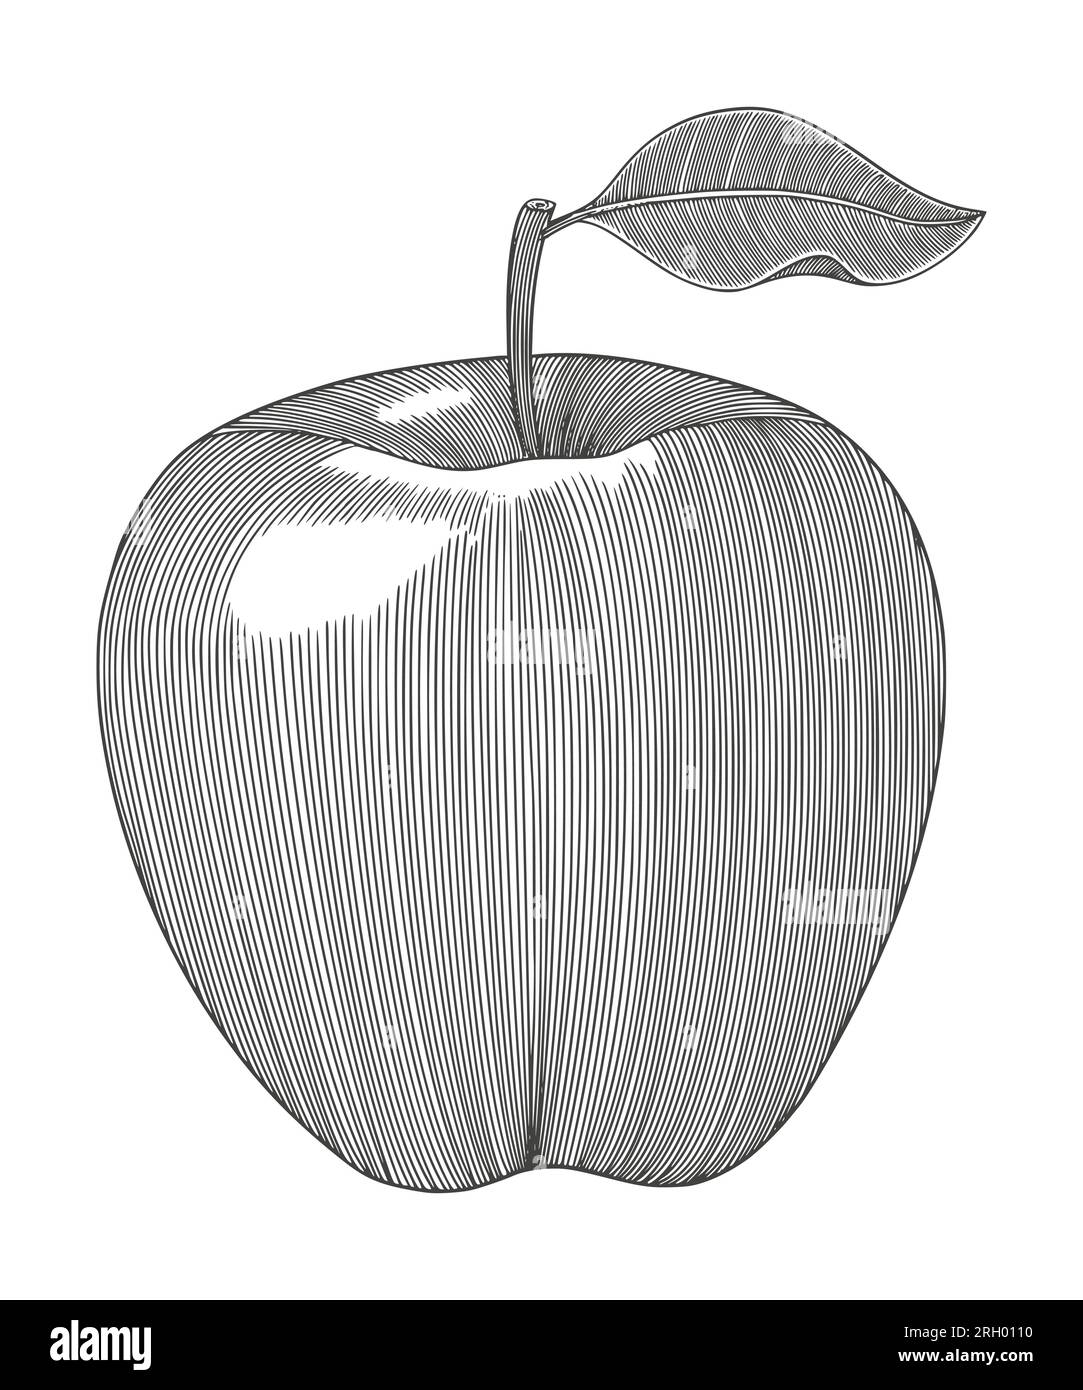 frutta di mela, disegno a mano illustrazione stile incisione vintage Illustrazione Vettoriale